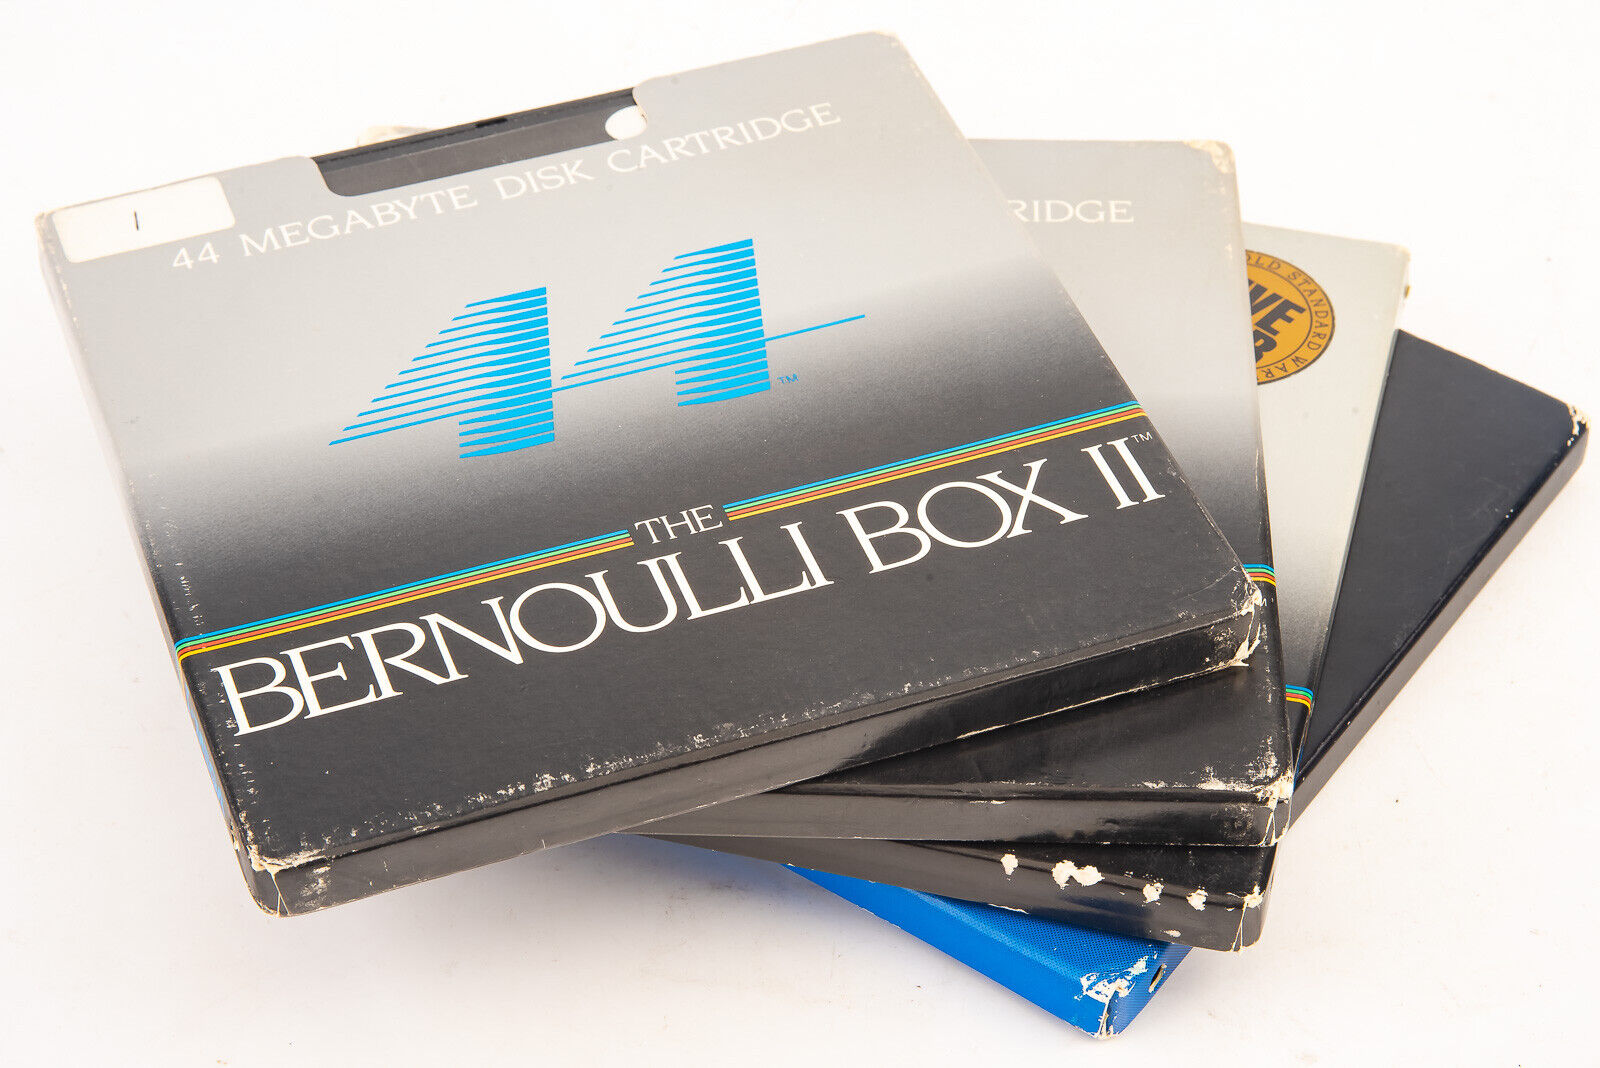 4 Iomega Bernoulli Box II High-Capacity 44 Megabyte Disk Cartridges in Cases V15